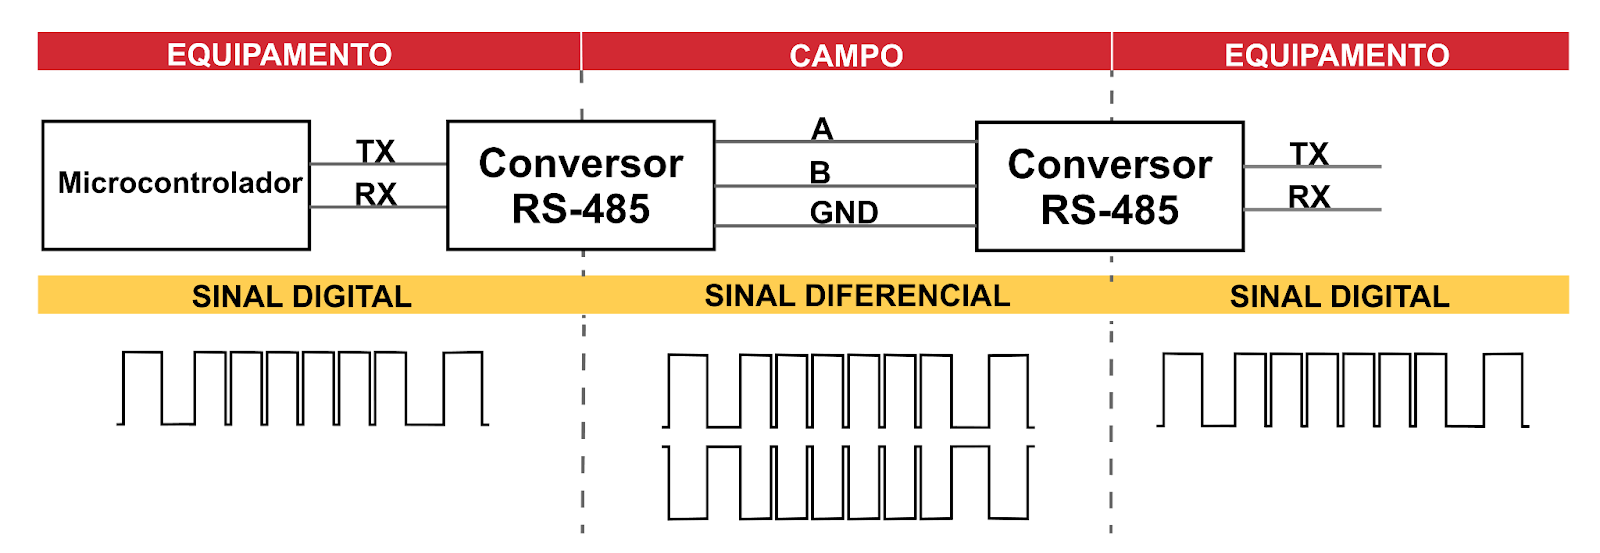 Diagrama da comunicação RS-485